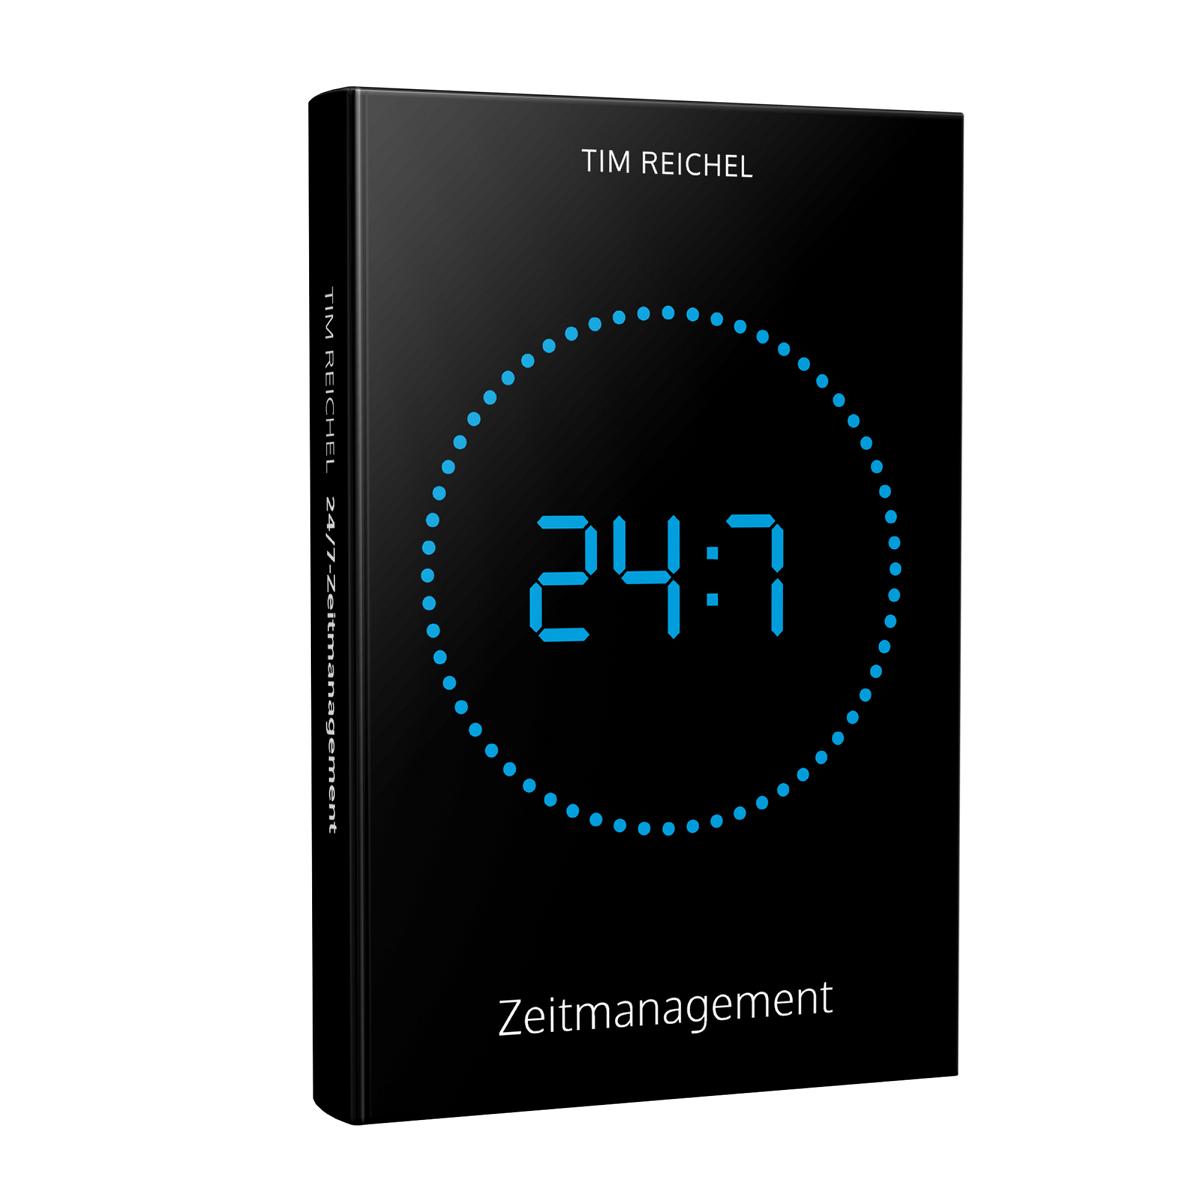 24/7-Zeitmanagement (Das Zeitmanagement-Buch für alle, die keine Zeit haben, ein Zeitmanagement-Buch zu lesen) von Tim Reichel erschienen im Studienscheiss Verlag